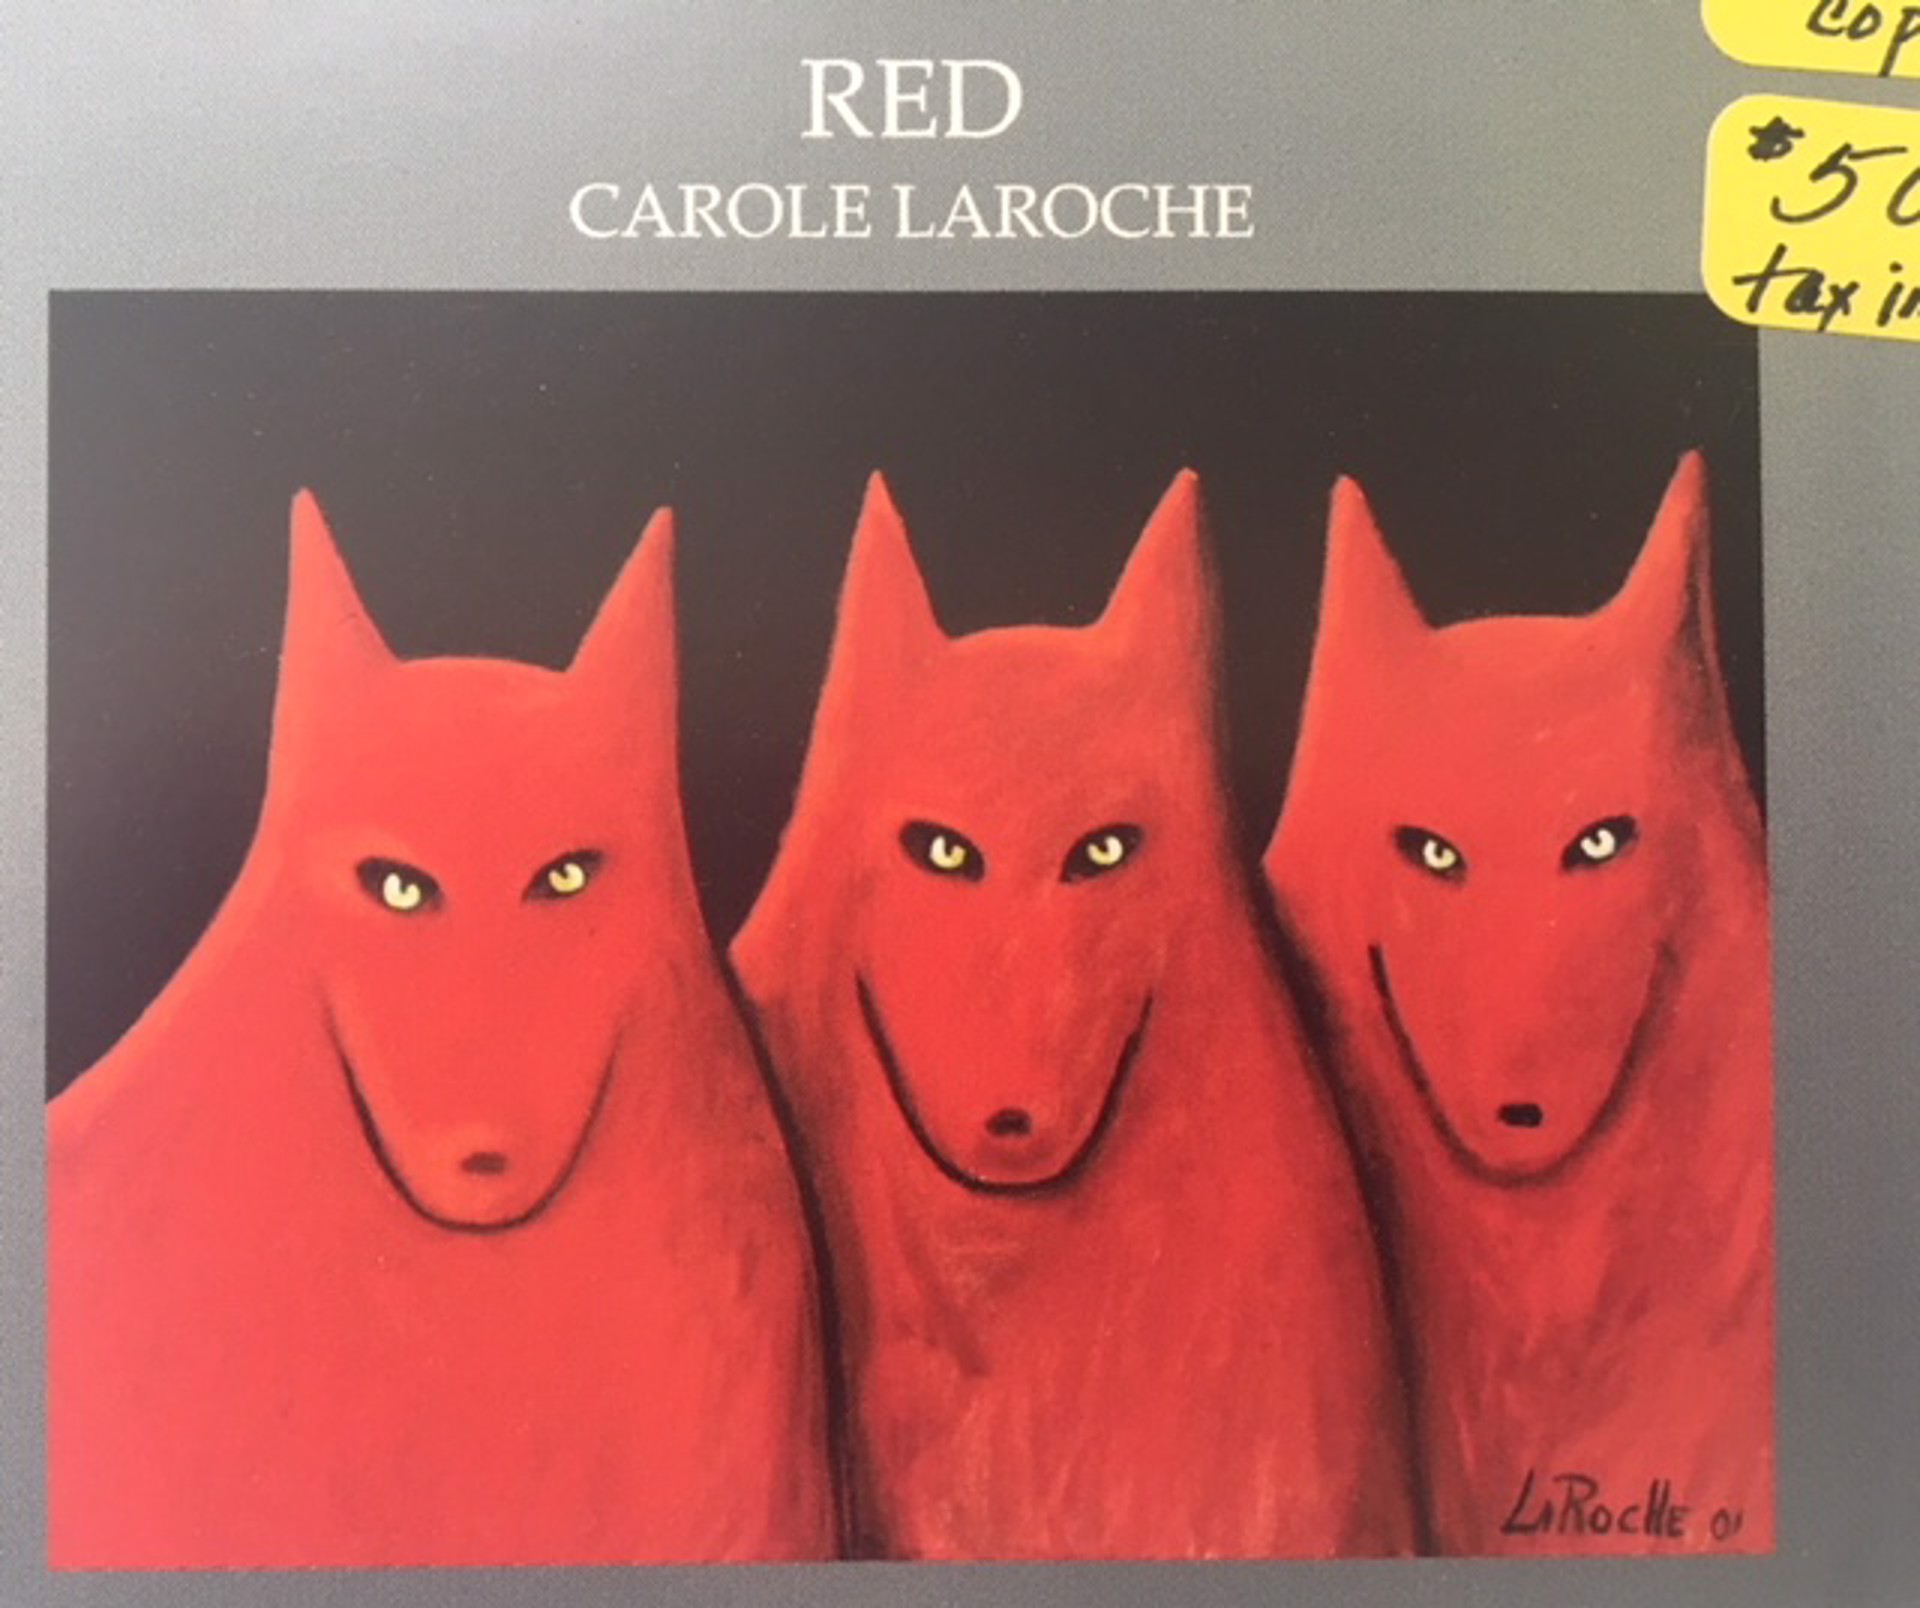 BOOK RED  $50  Cloth by Carole LaRoche